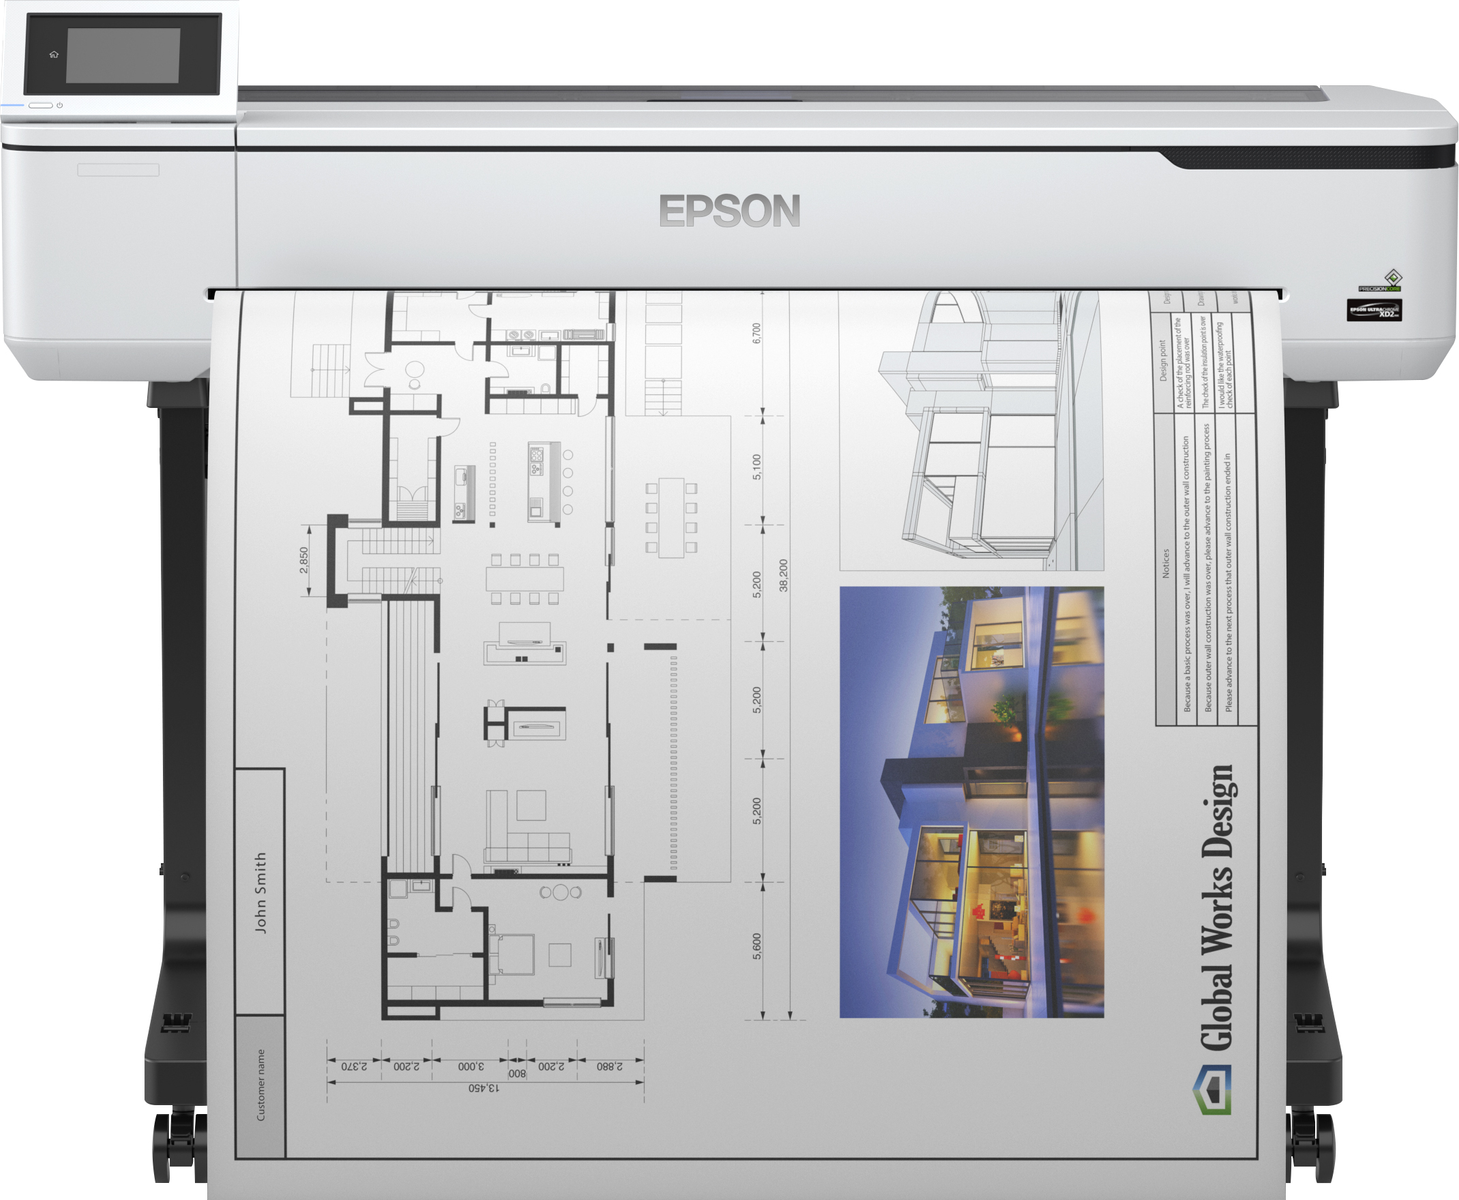 WLAN SC-T5100 Netzwerkfähig EPSON Laser Multifunktionsdrucker